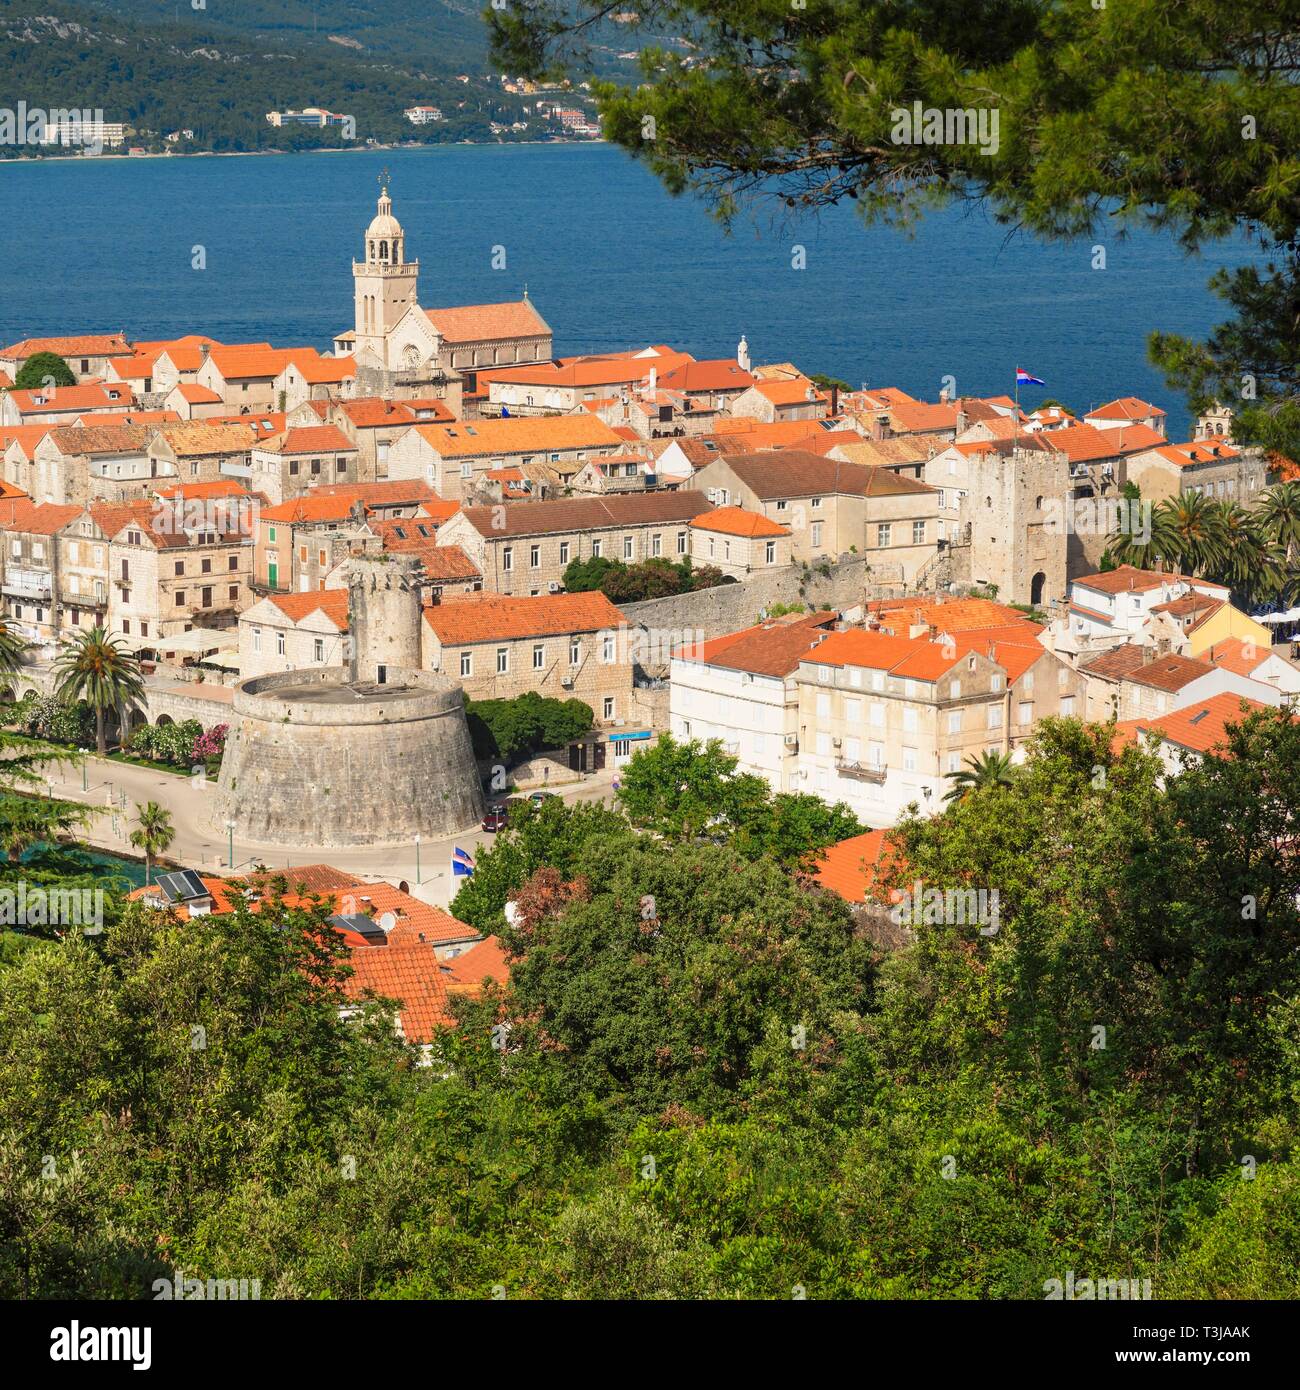 Vecchia città di Korcula, Isola di Korcula, costa adriatica croata, Dalmazia, Croazia Foto Stock